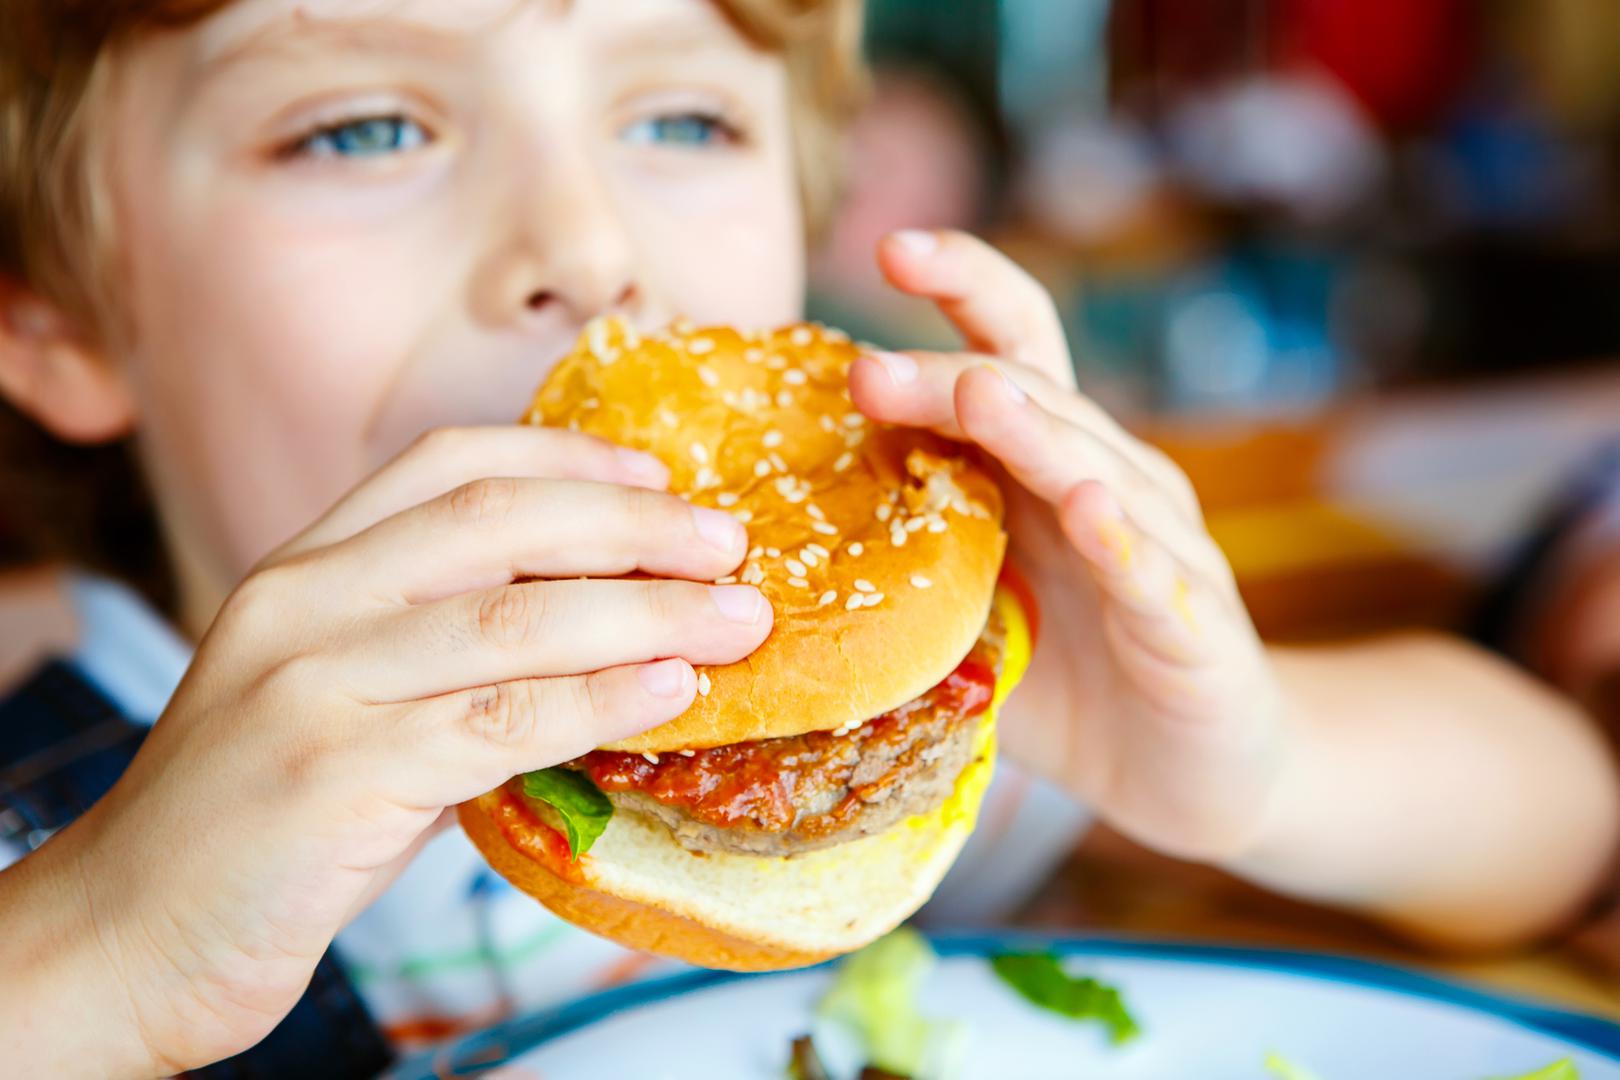 Roditelji često djeci daju jesti bilo što jer su sretni da pojedu "bar nešto" s obzirom na to da svi znamo koliko mališani znaju biti izbirljivi. No, nutricionisti kažu kako je to krivi pristup jer se tako stvaraju loše prehrambene navike.